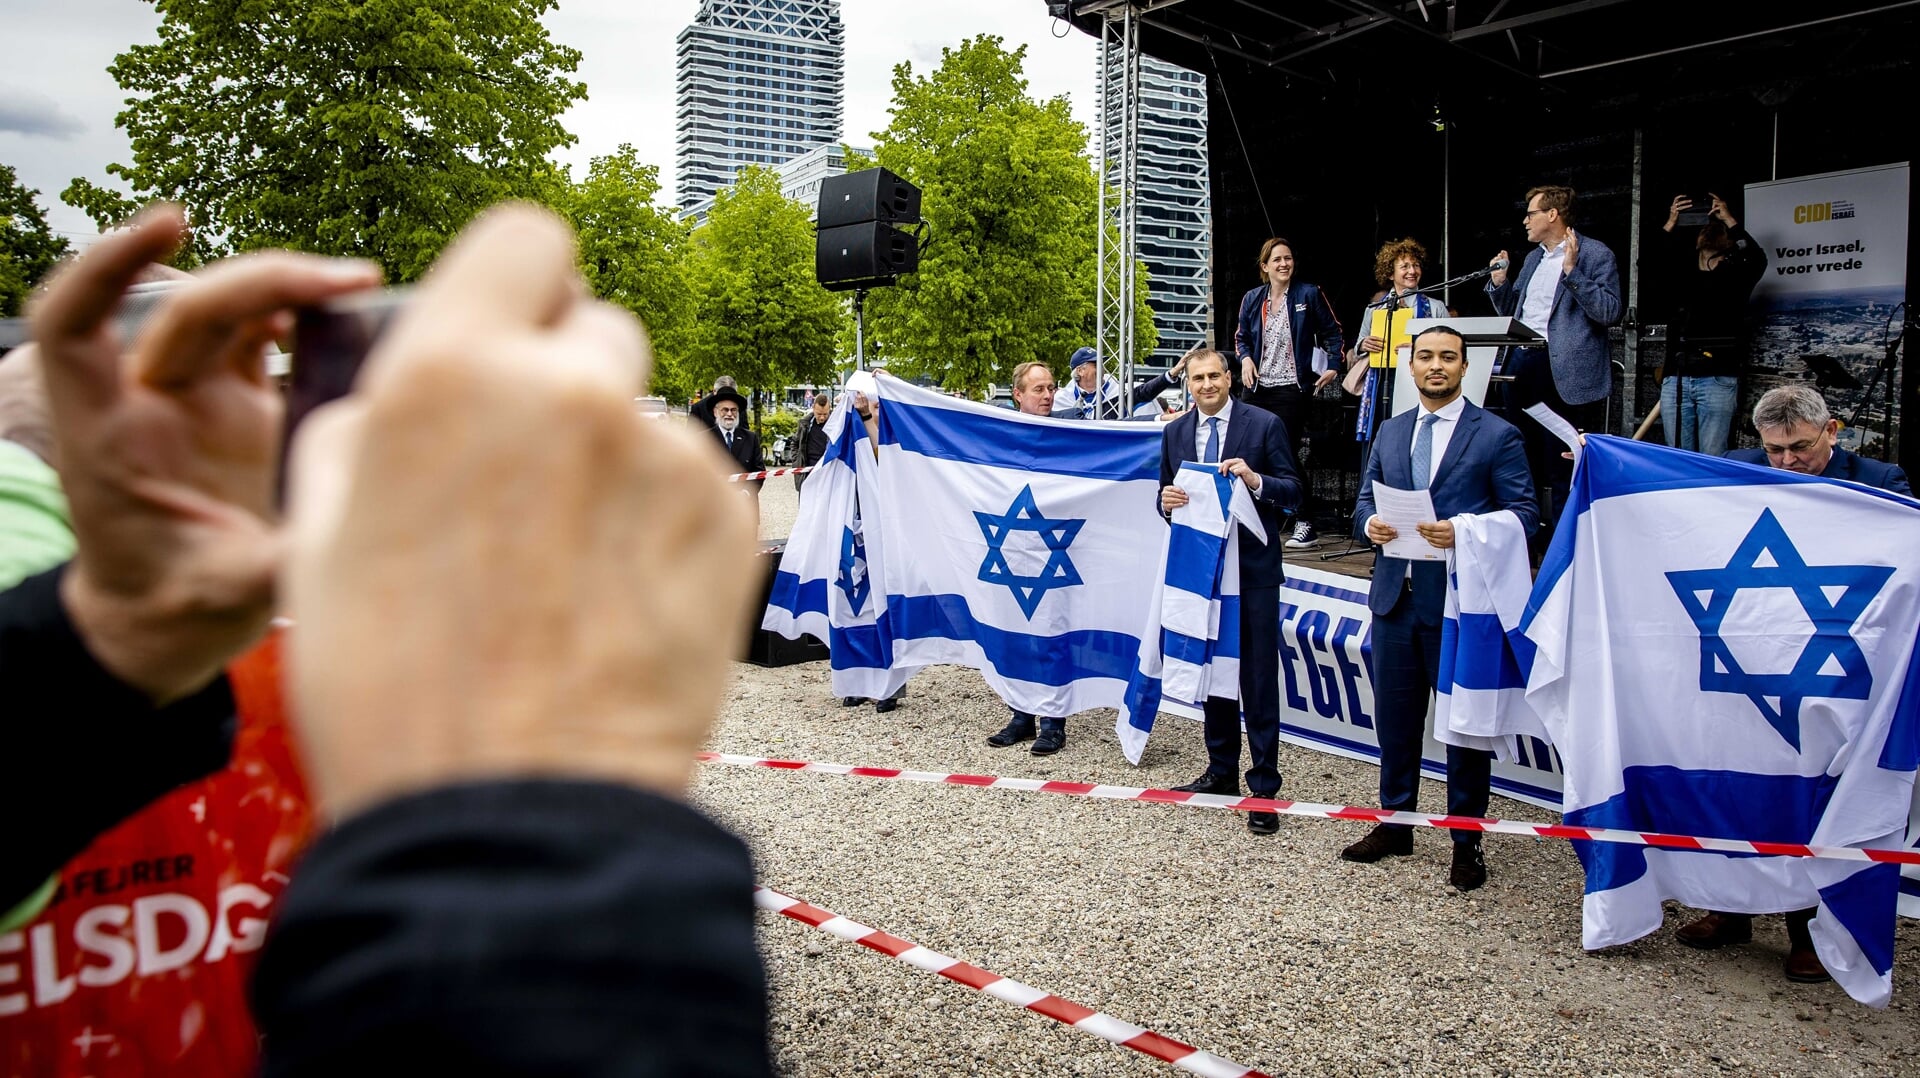 Pro-Israëldemonstratie in Den Haag, in mei 2021, met onder anderen Don Ceder van de ChristenUnie.